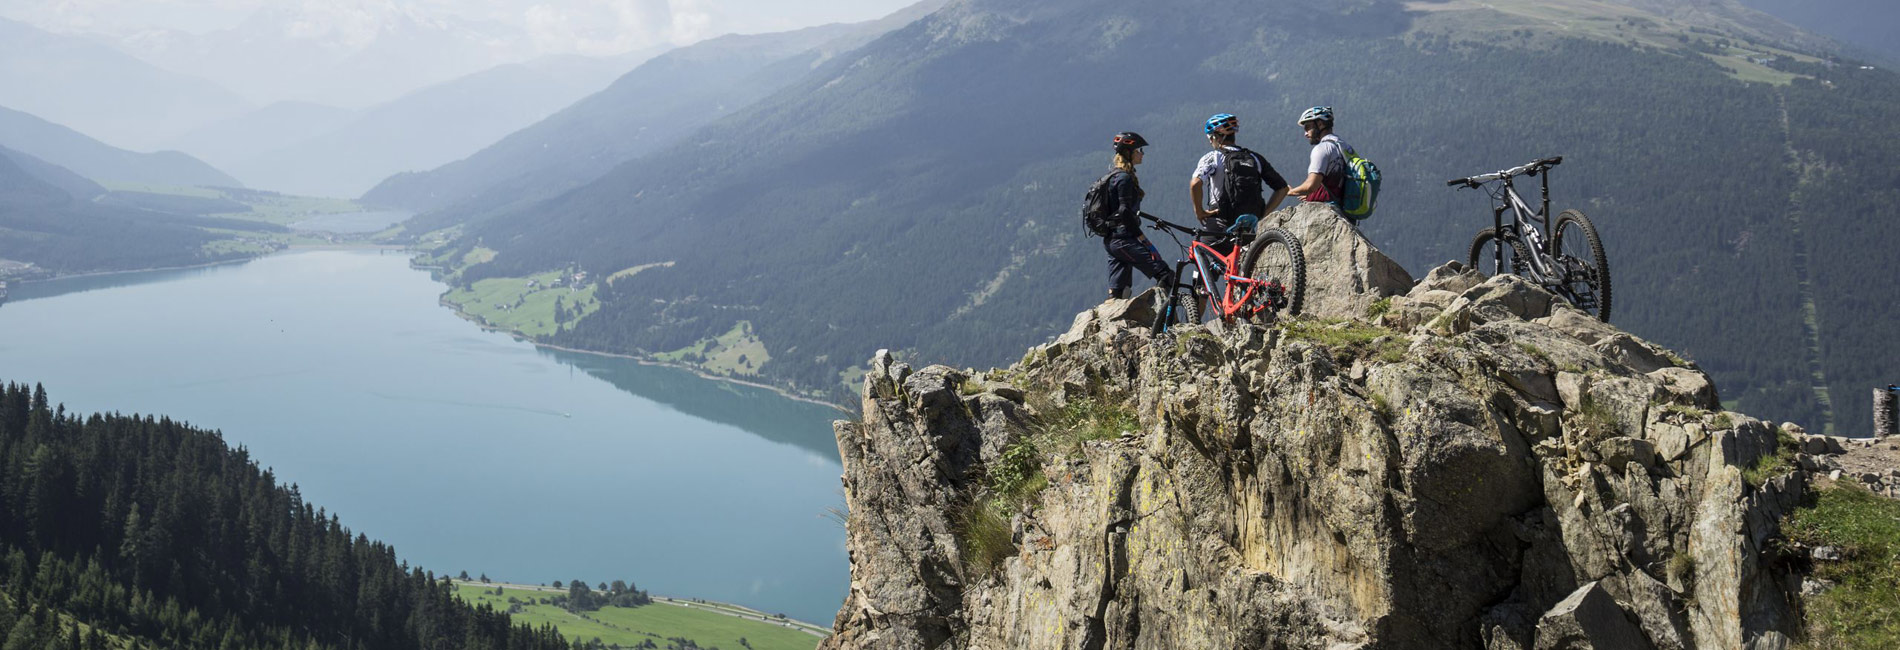 Biken mit Aussicht auf die Tiroler Seenwelt - copyright Tirol Werbung / Neusser Peter